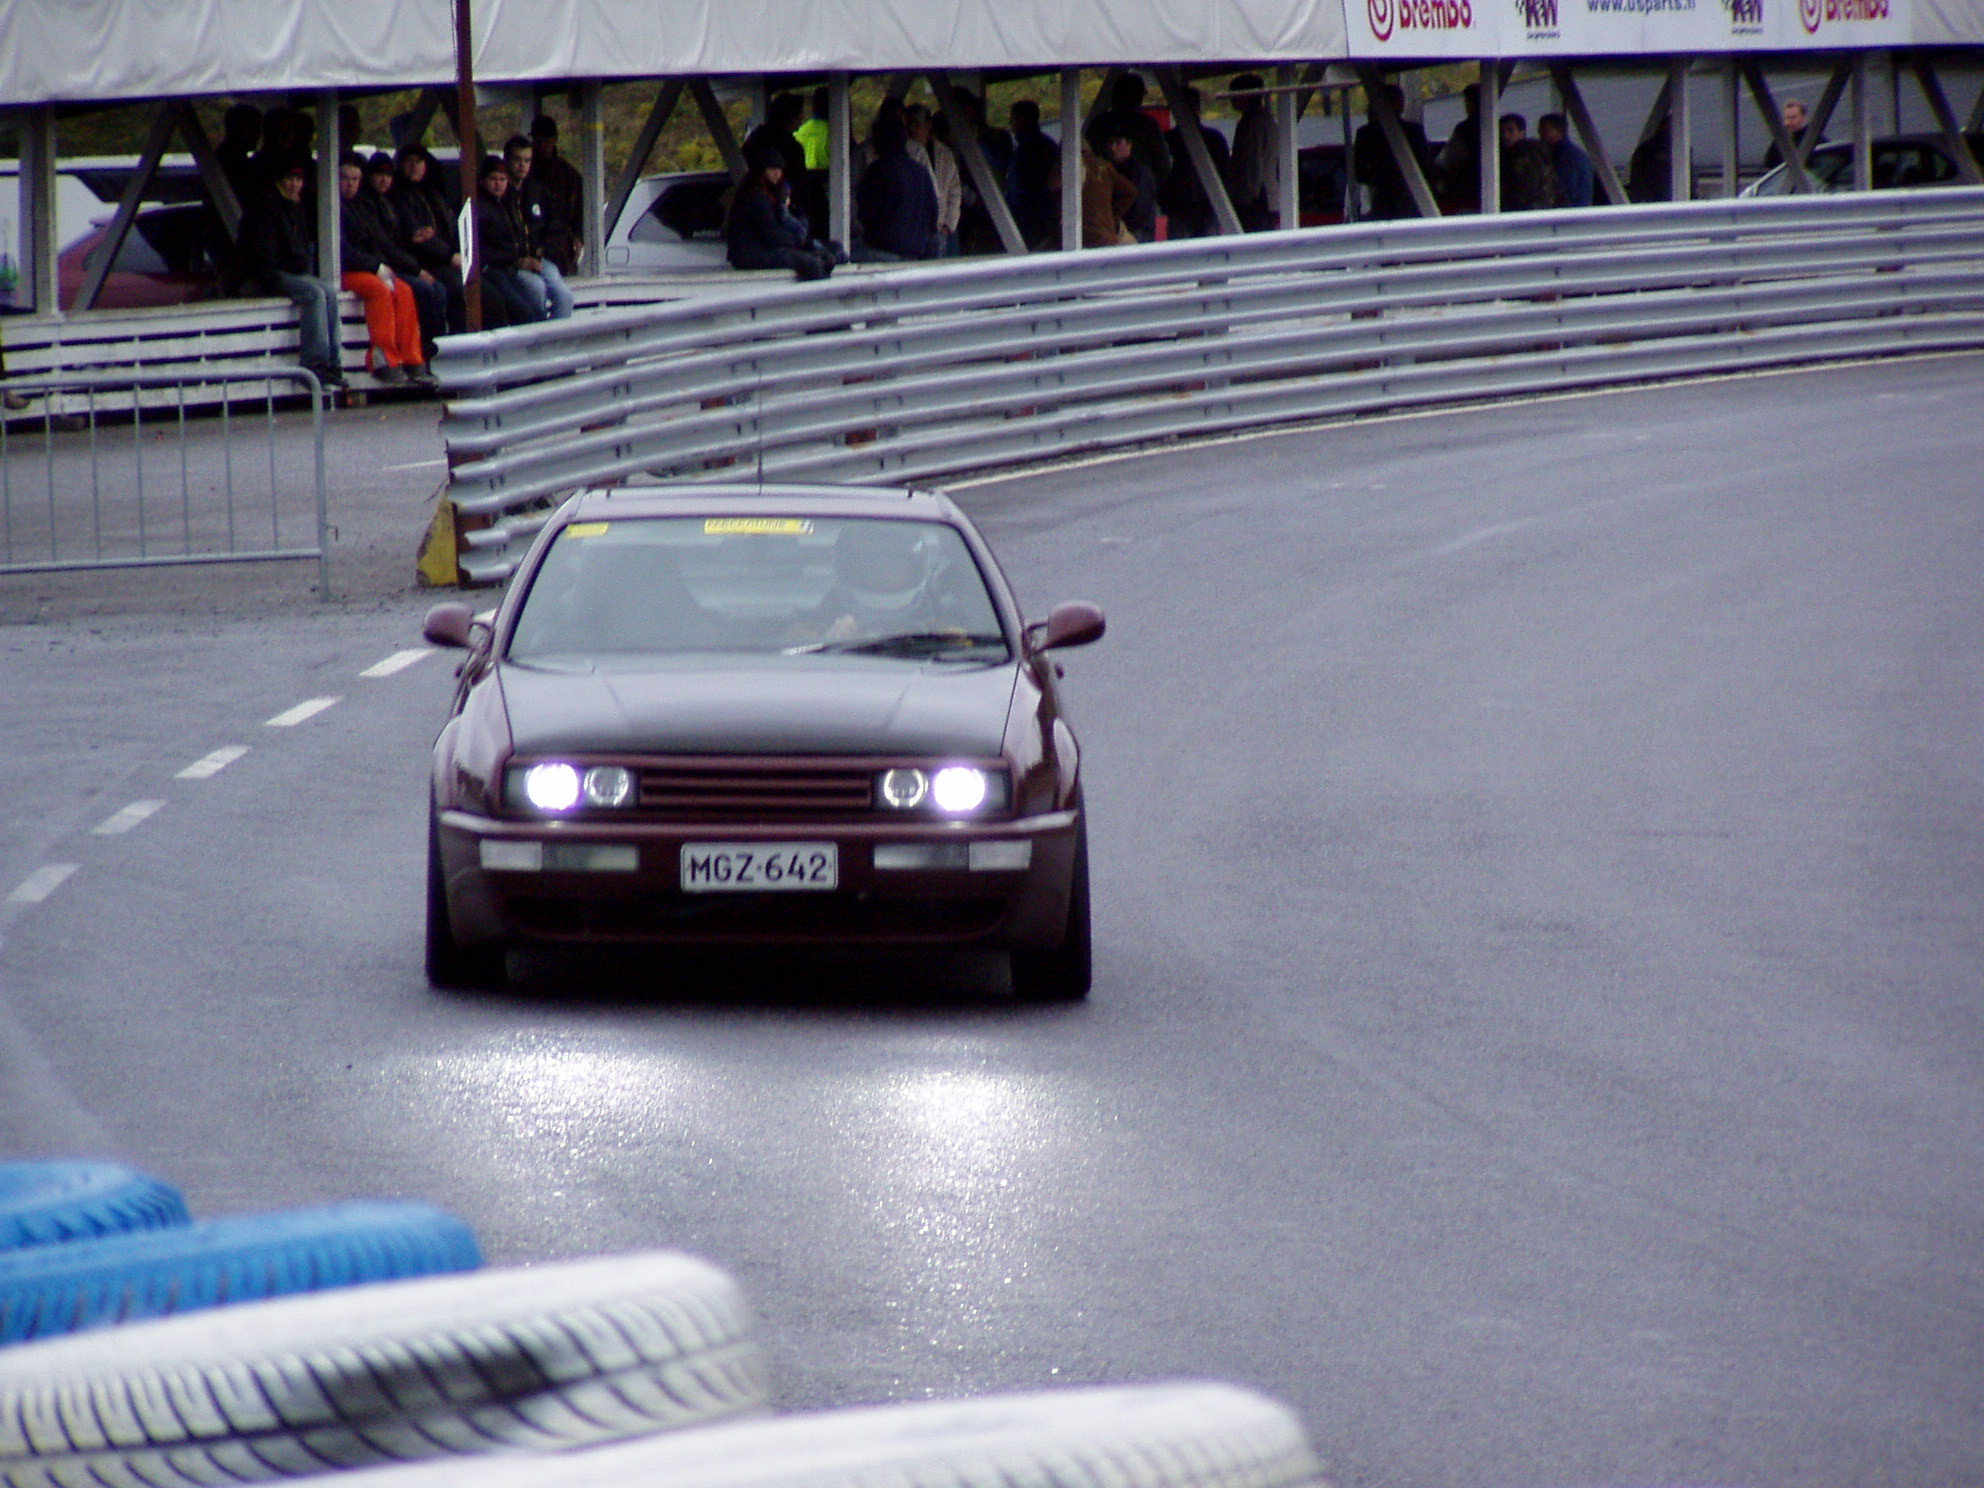 Sunday on racetrack 18.9.2005, Volkswagen Corrado Coupe VR6 1993 radalla